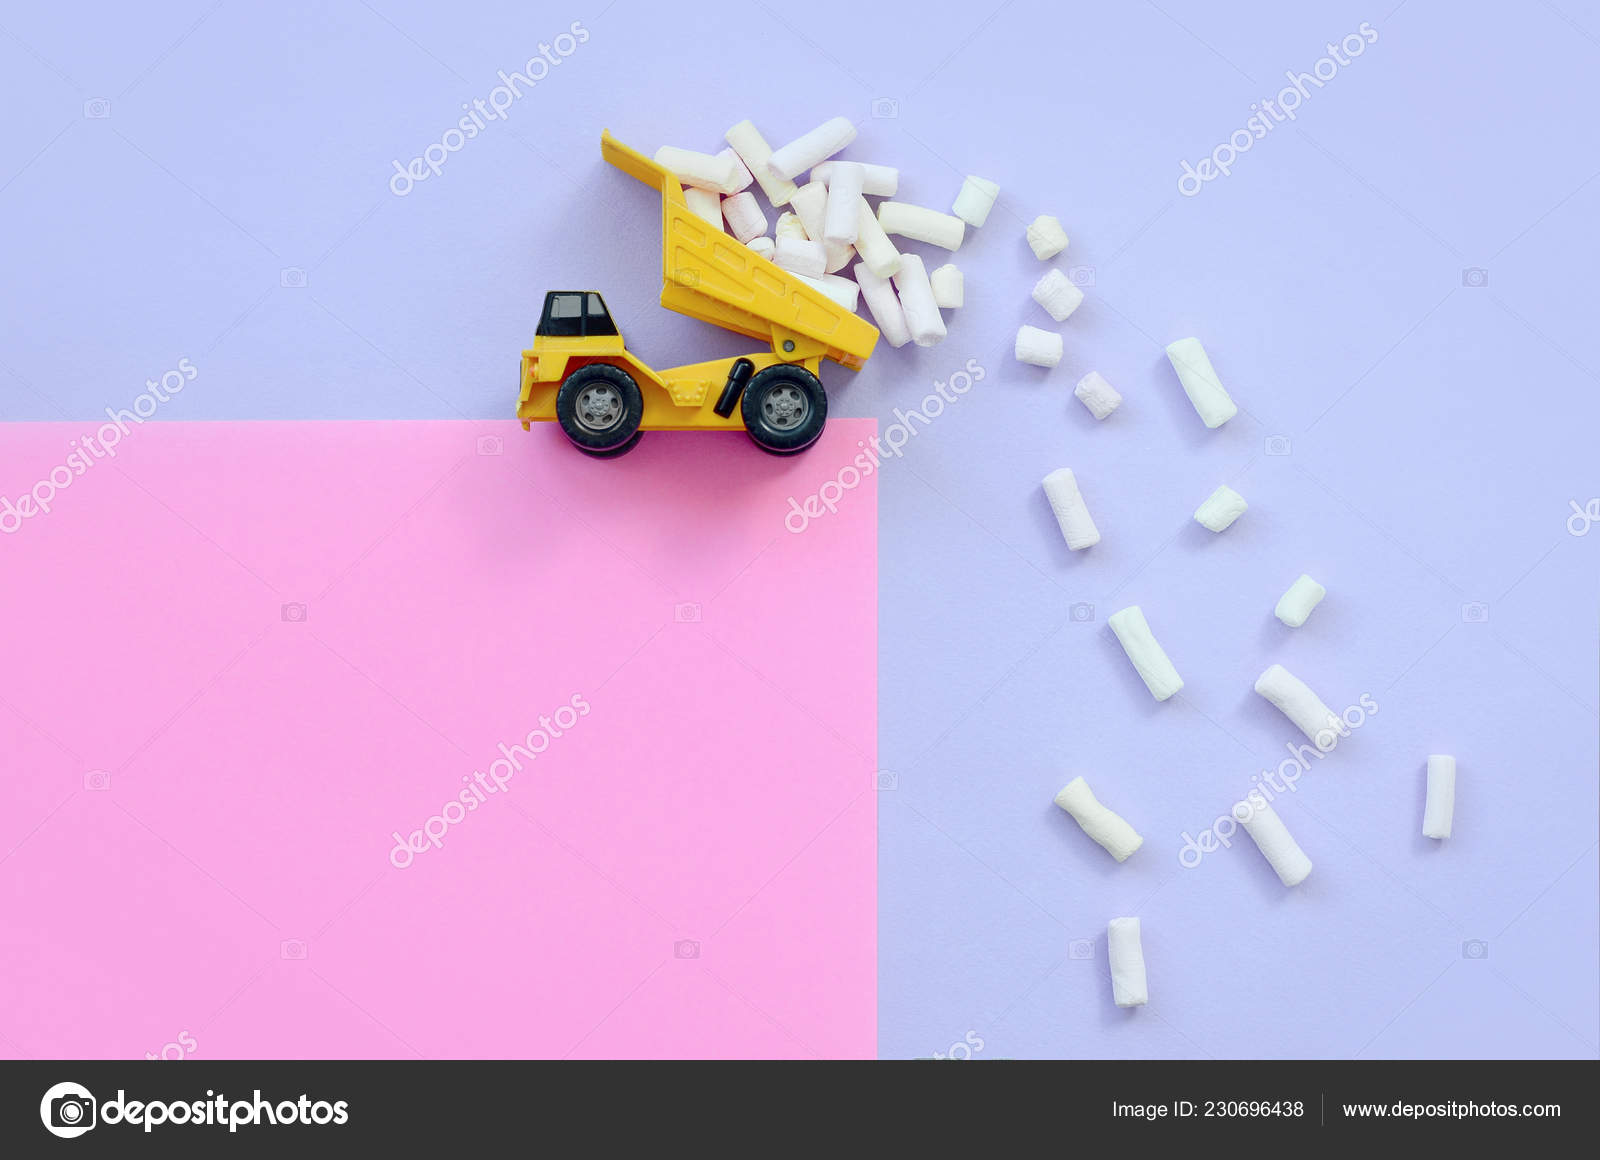 pink dump truck toy